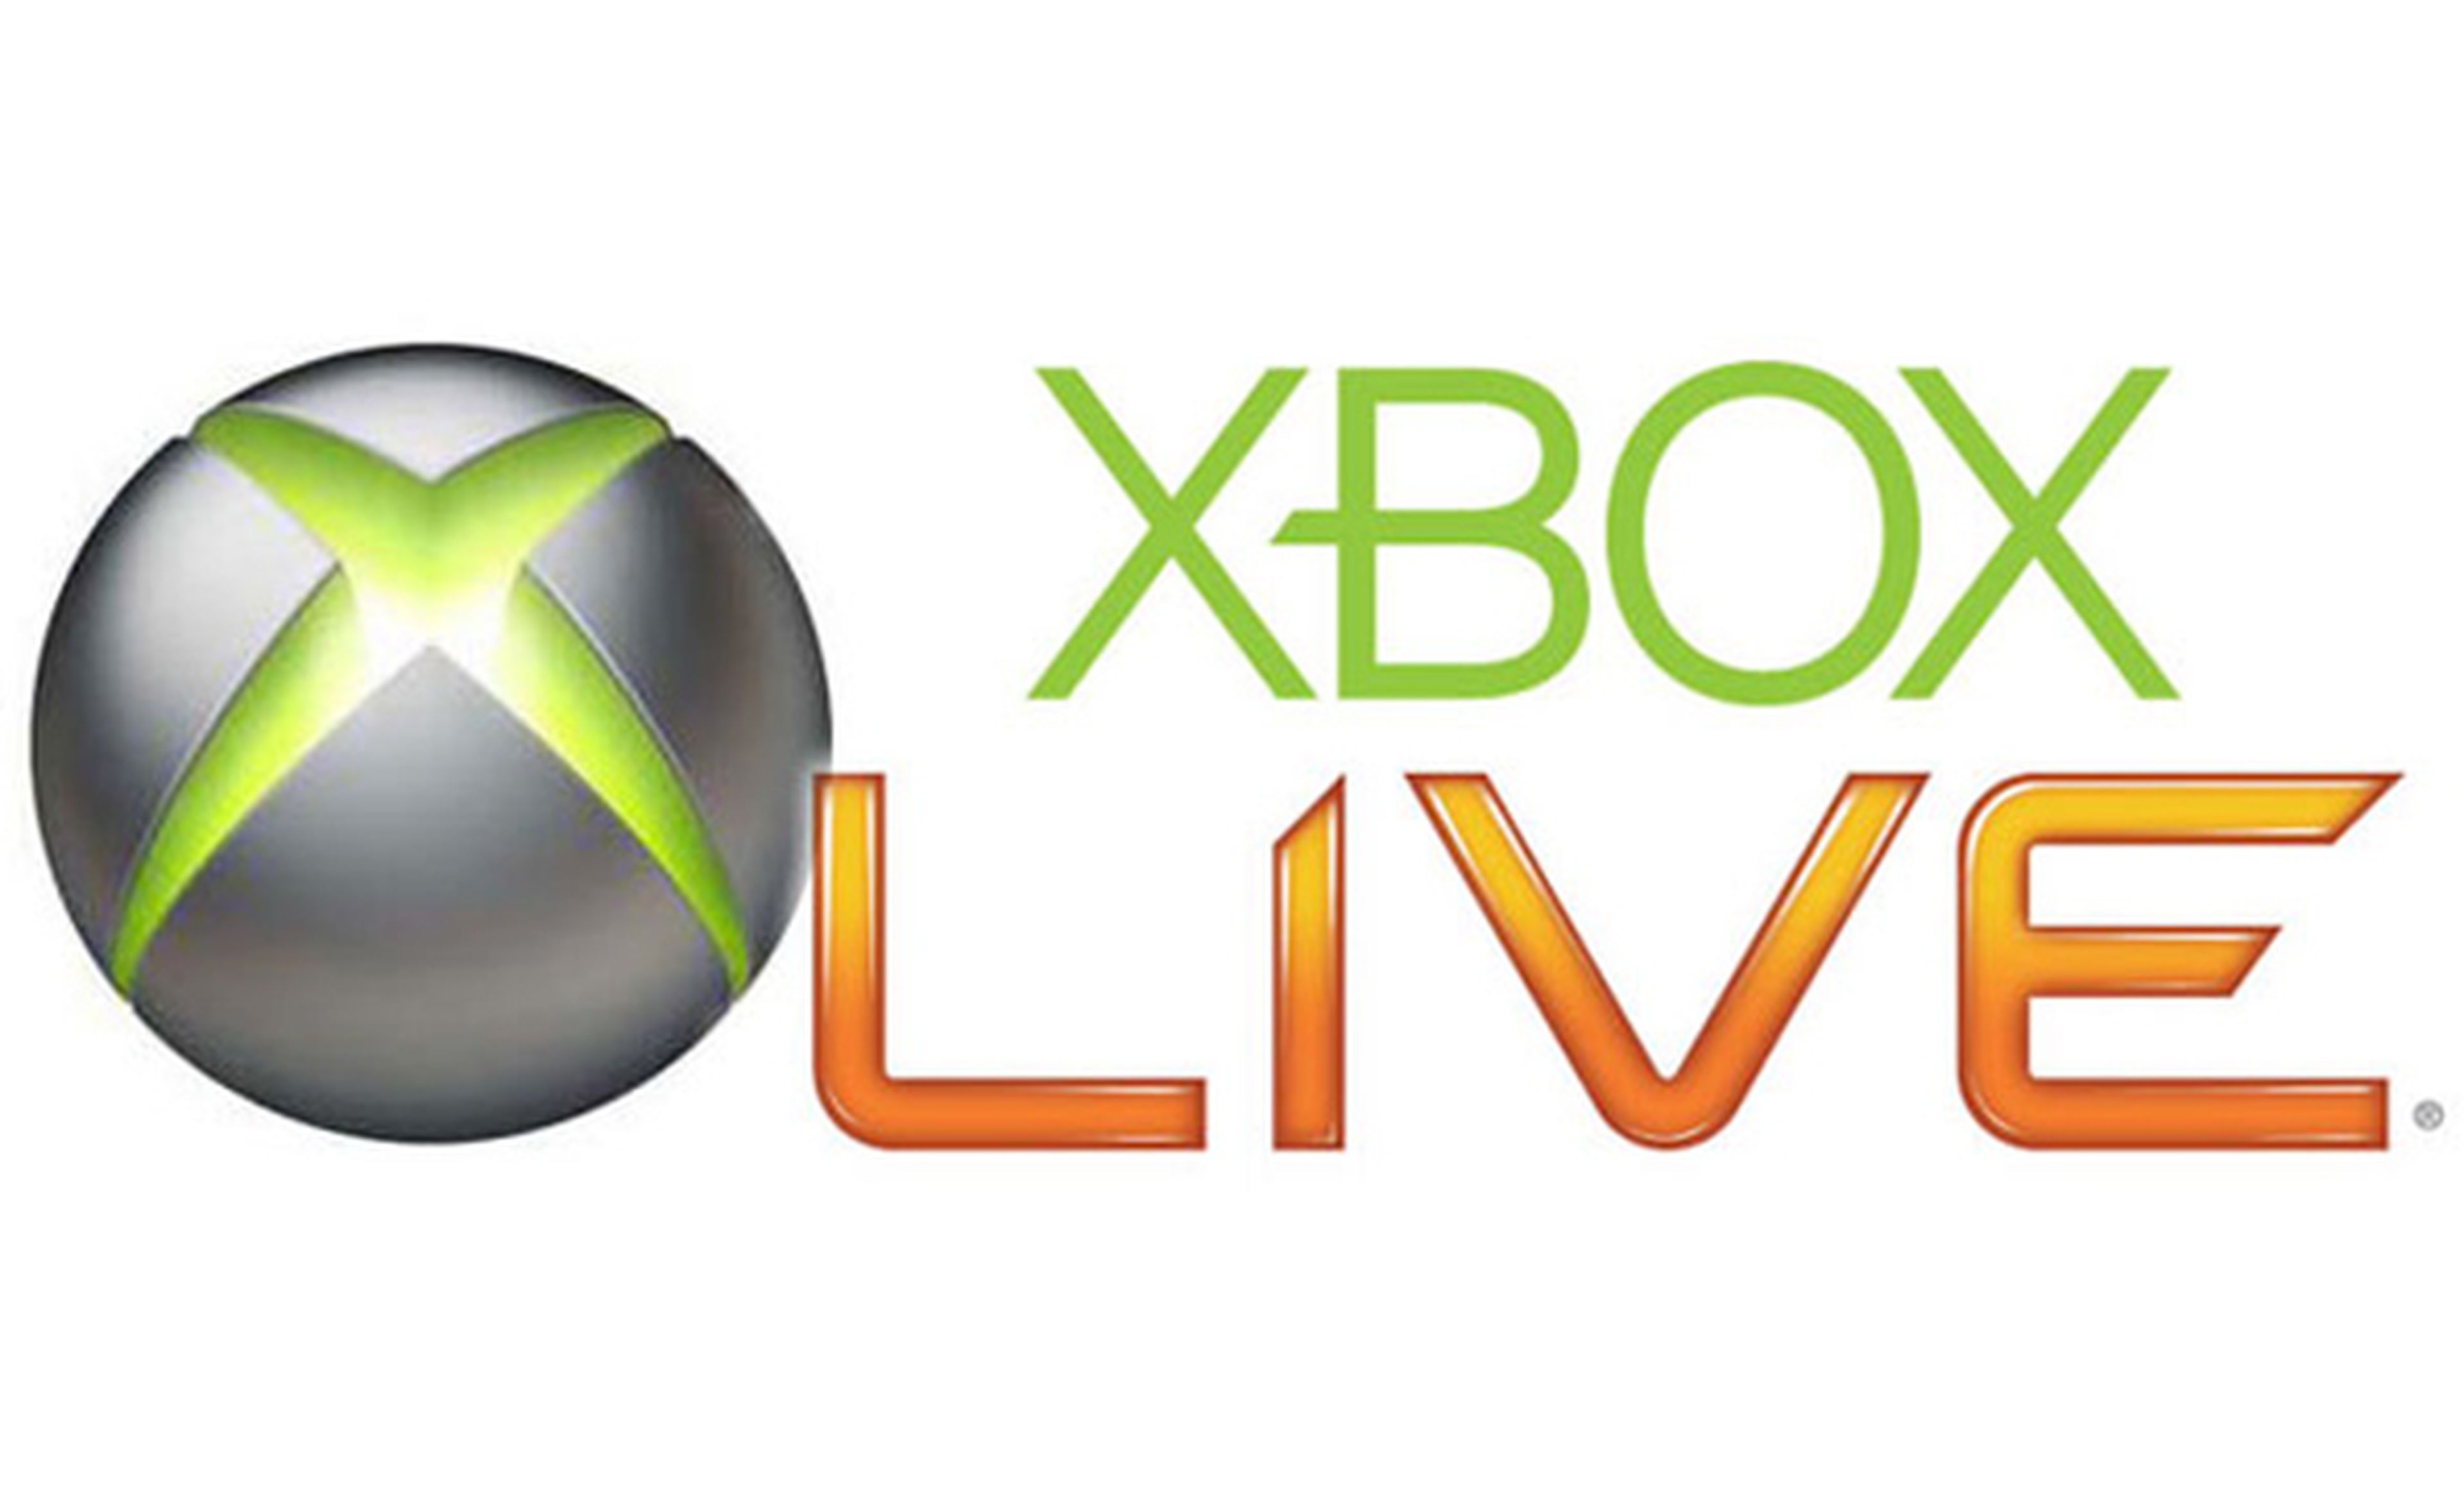 Las rebajas llegan a Xbox Live